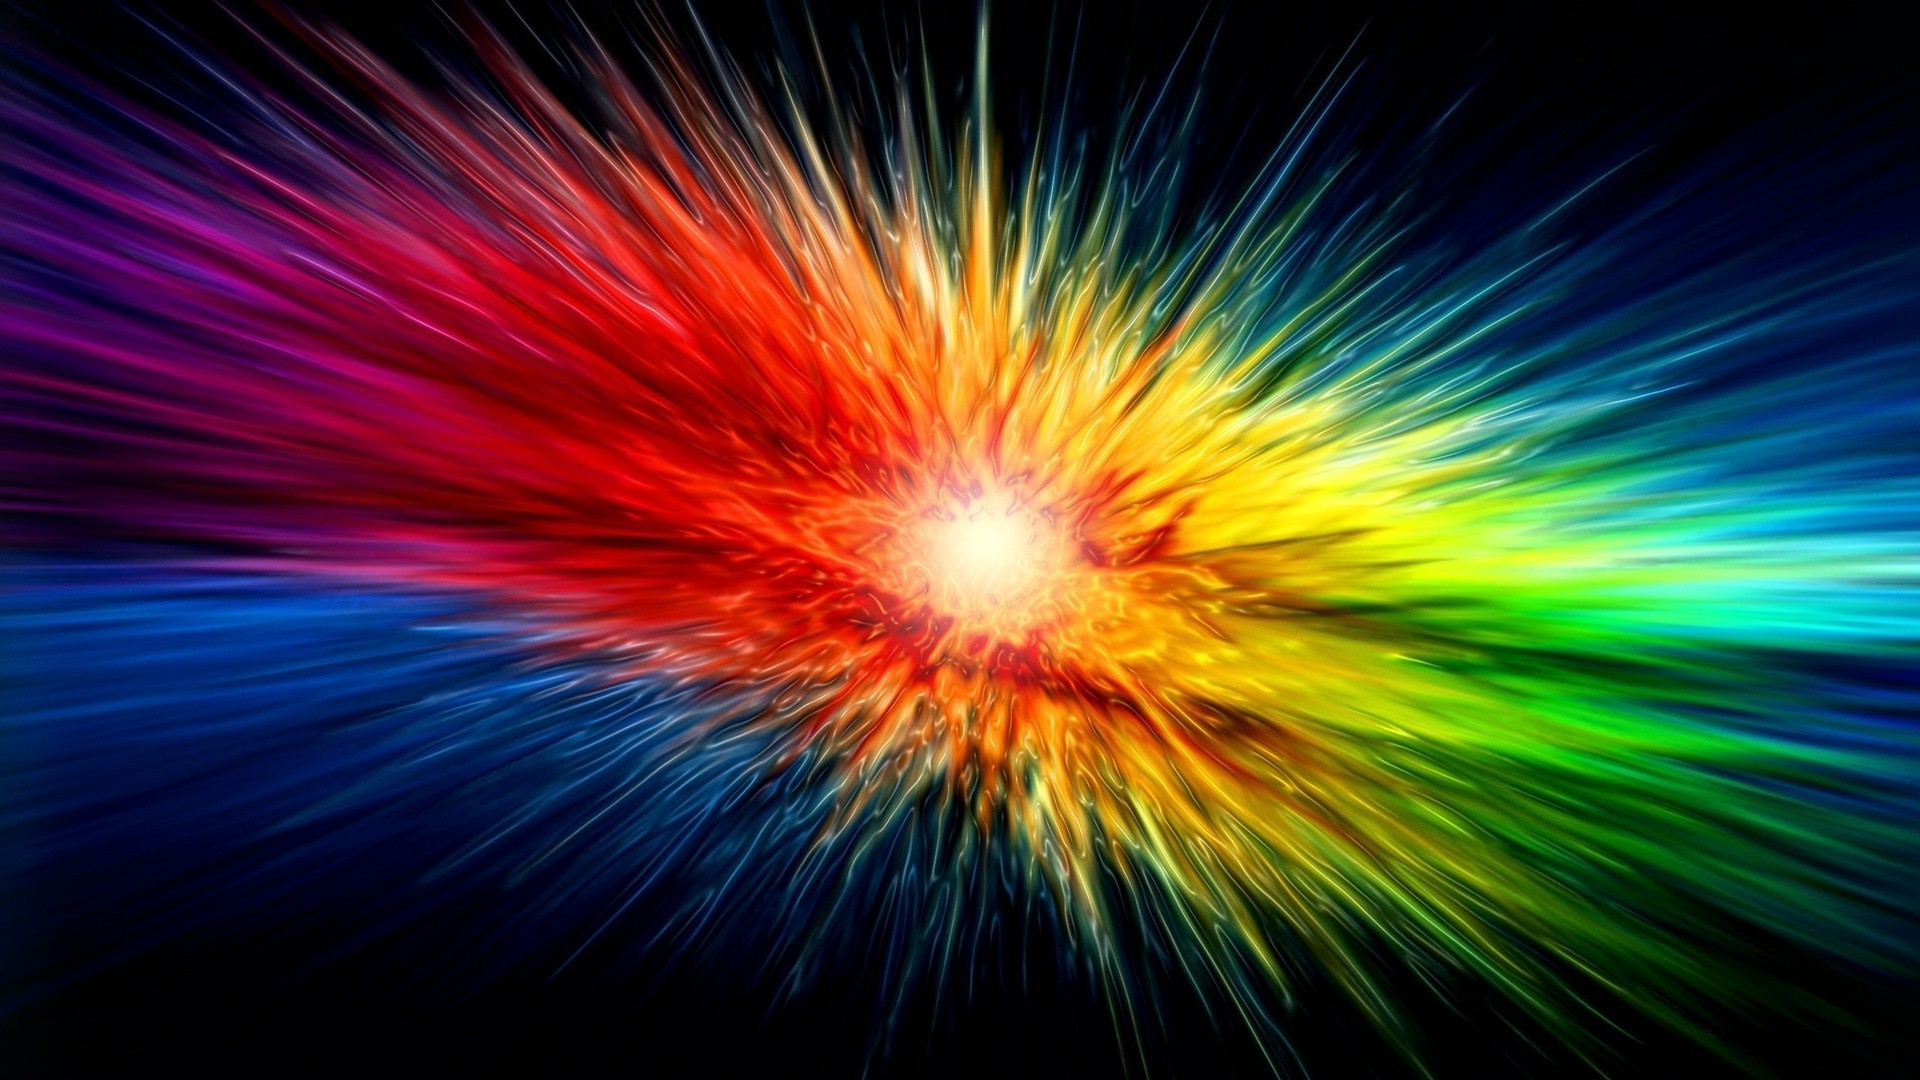 яркие краски взрыв яркий фейерверк пламя аннотация свет размытость вспышки люминесценция магия энергии движения рождество